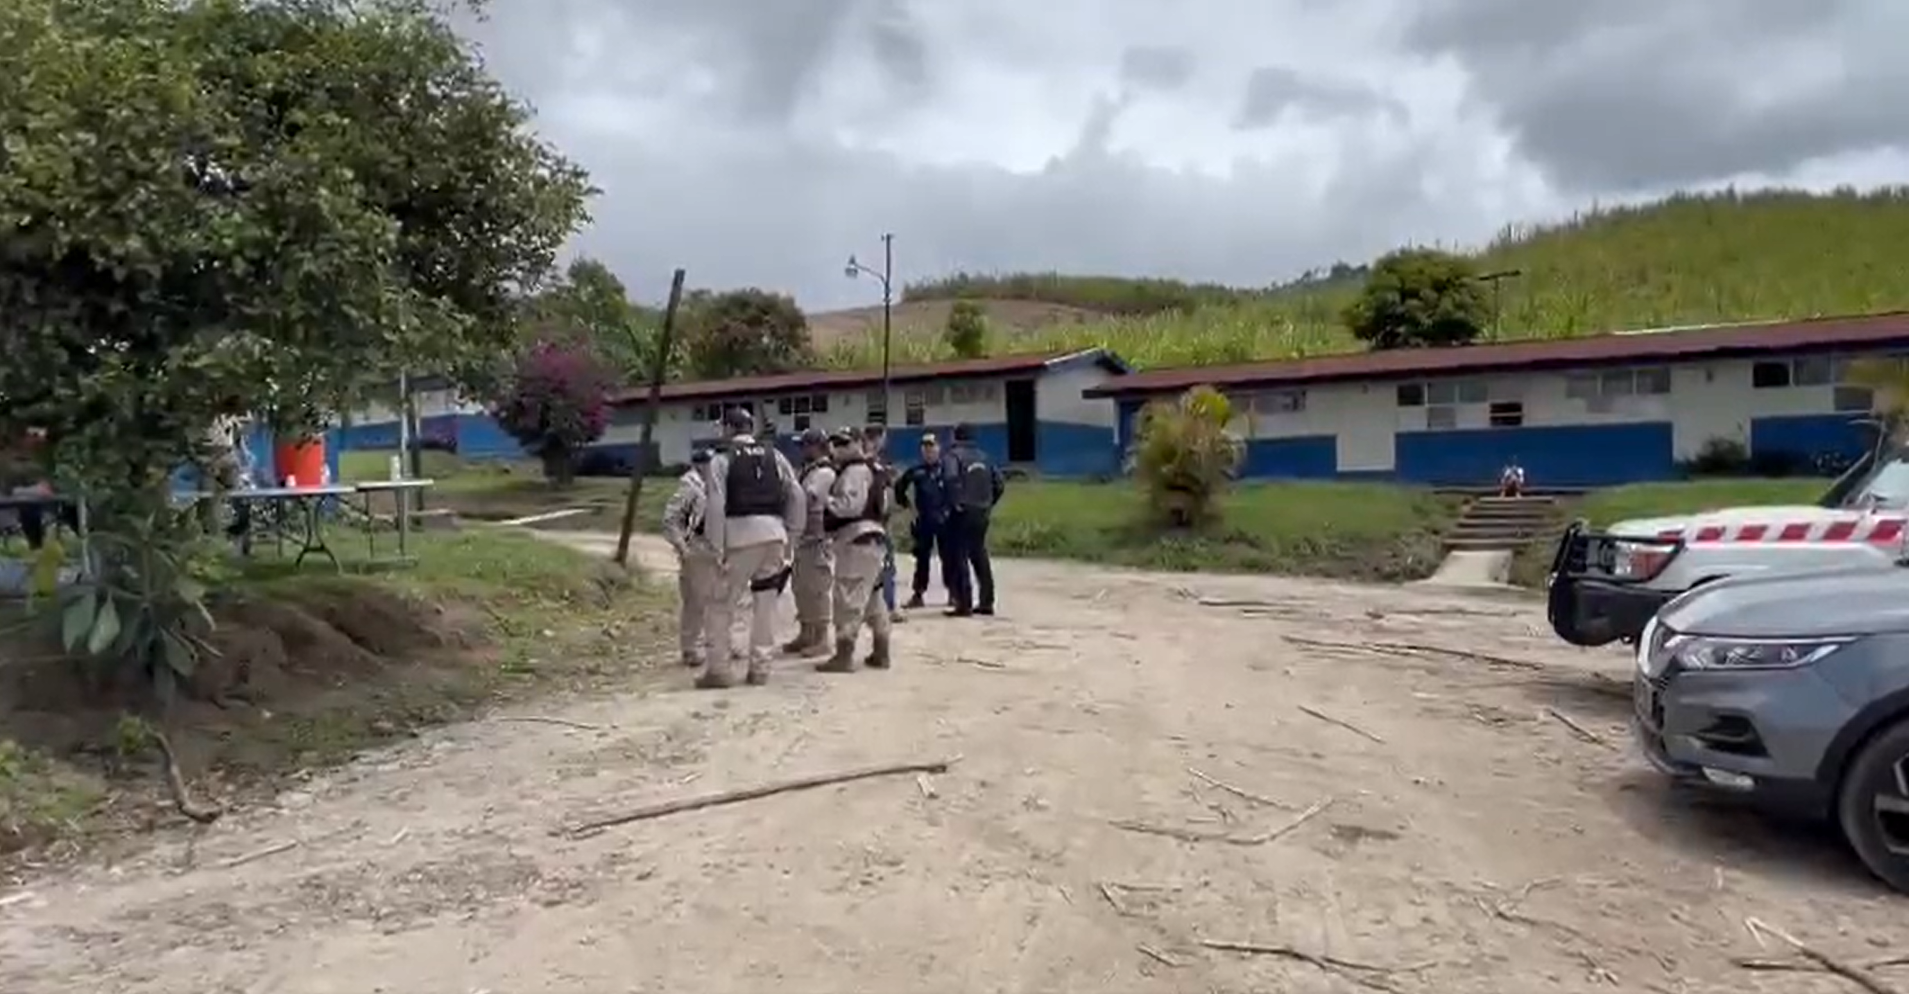 El rapto de una bebé de manos de su madre de 13 años conmociona a Costa Rica